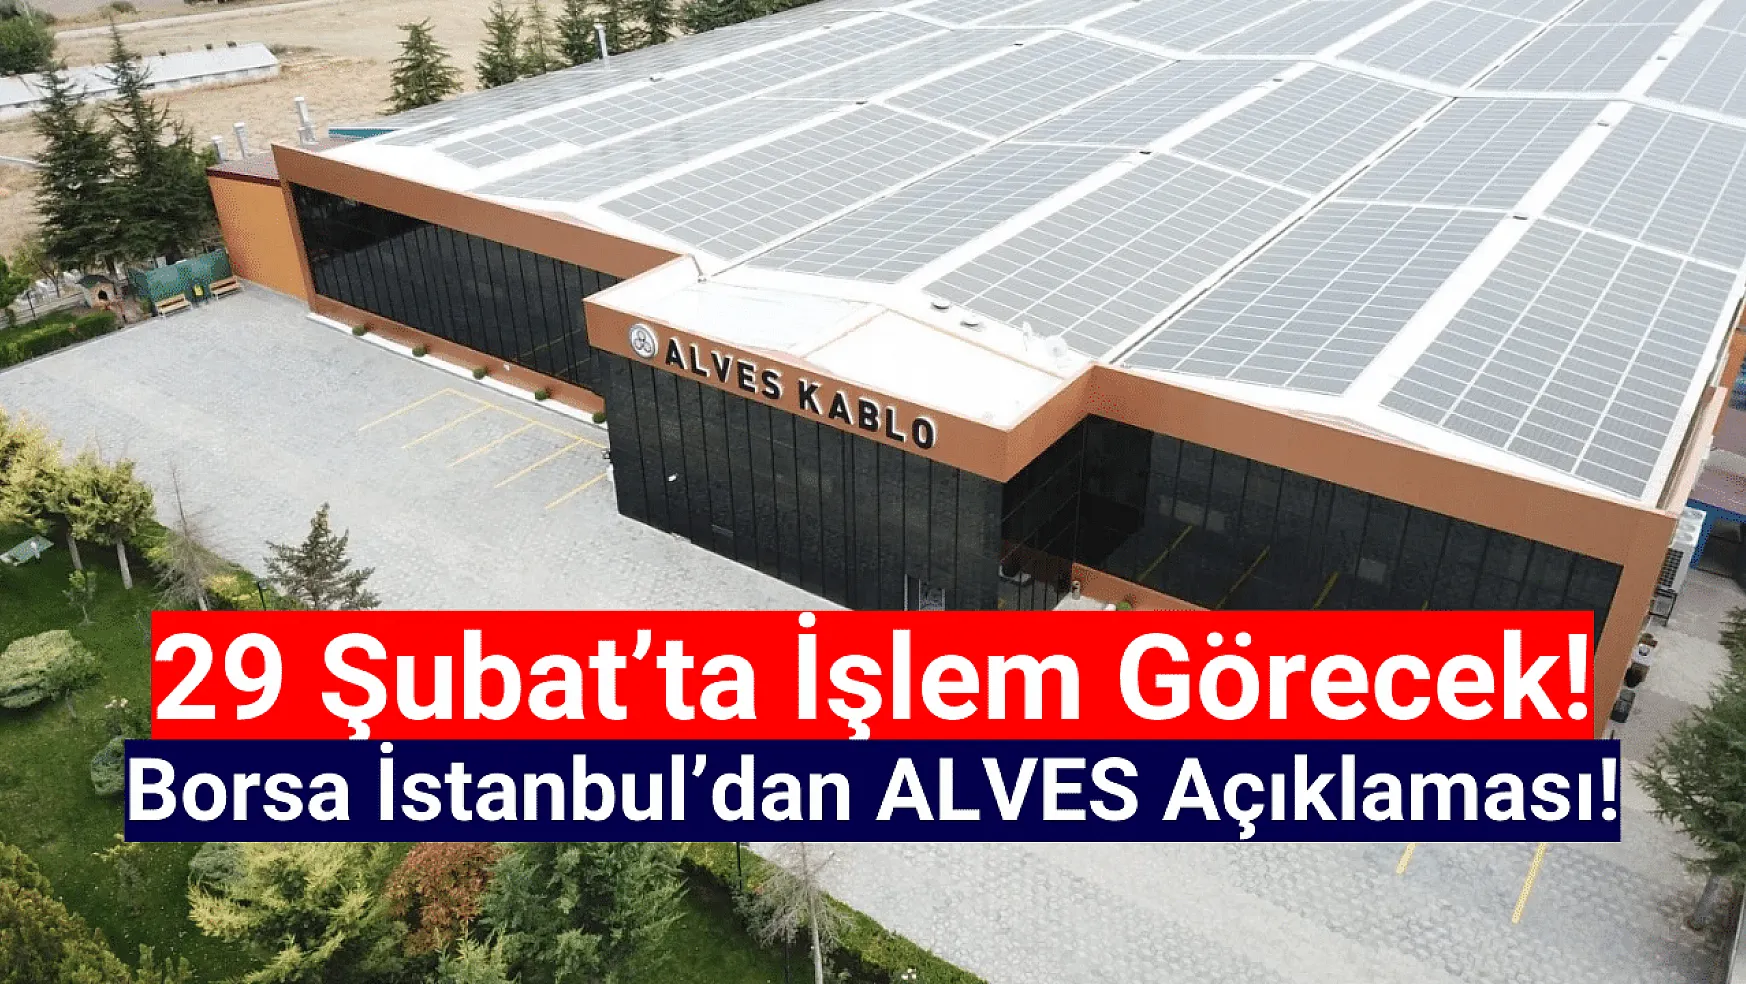 Borsa İstanbul'dan ALVES Kablo açıklaması!